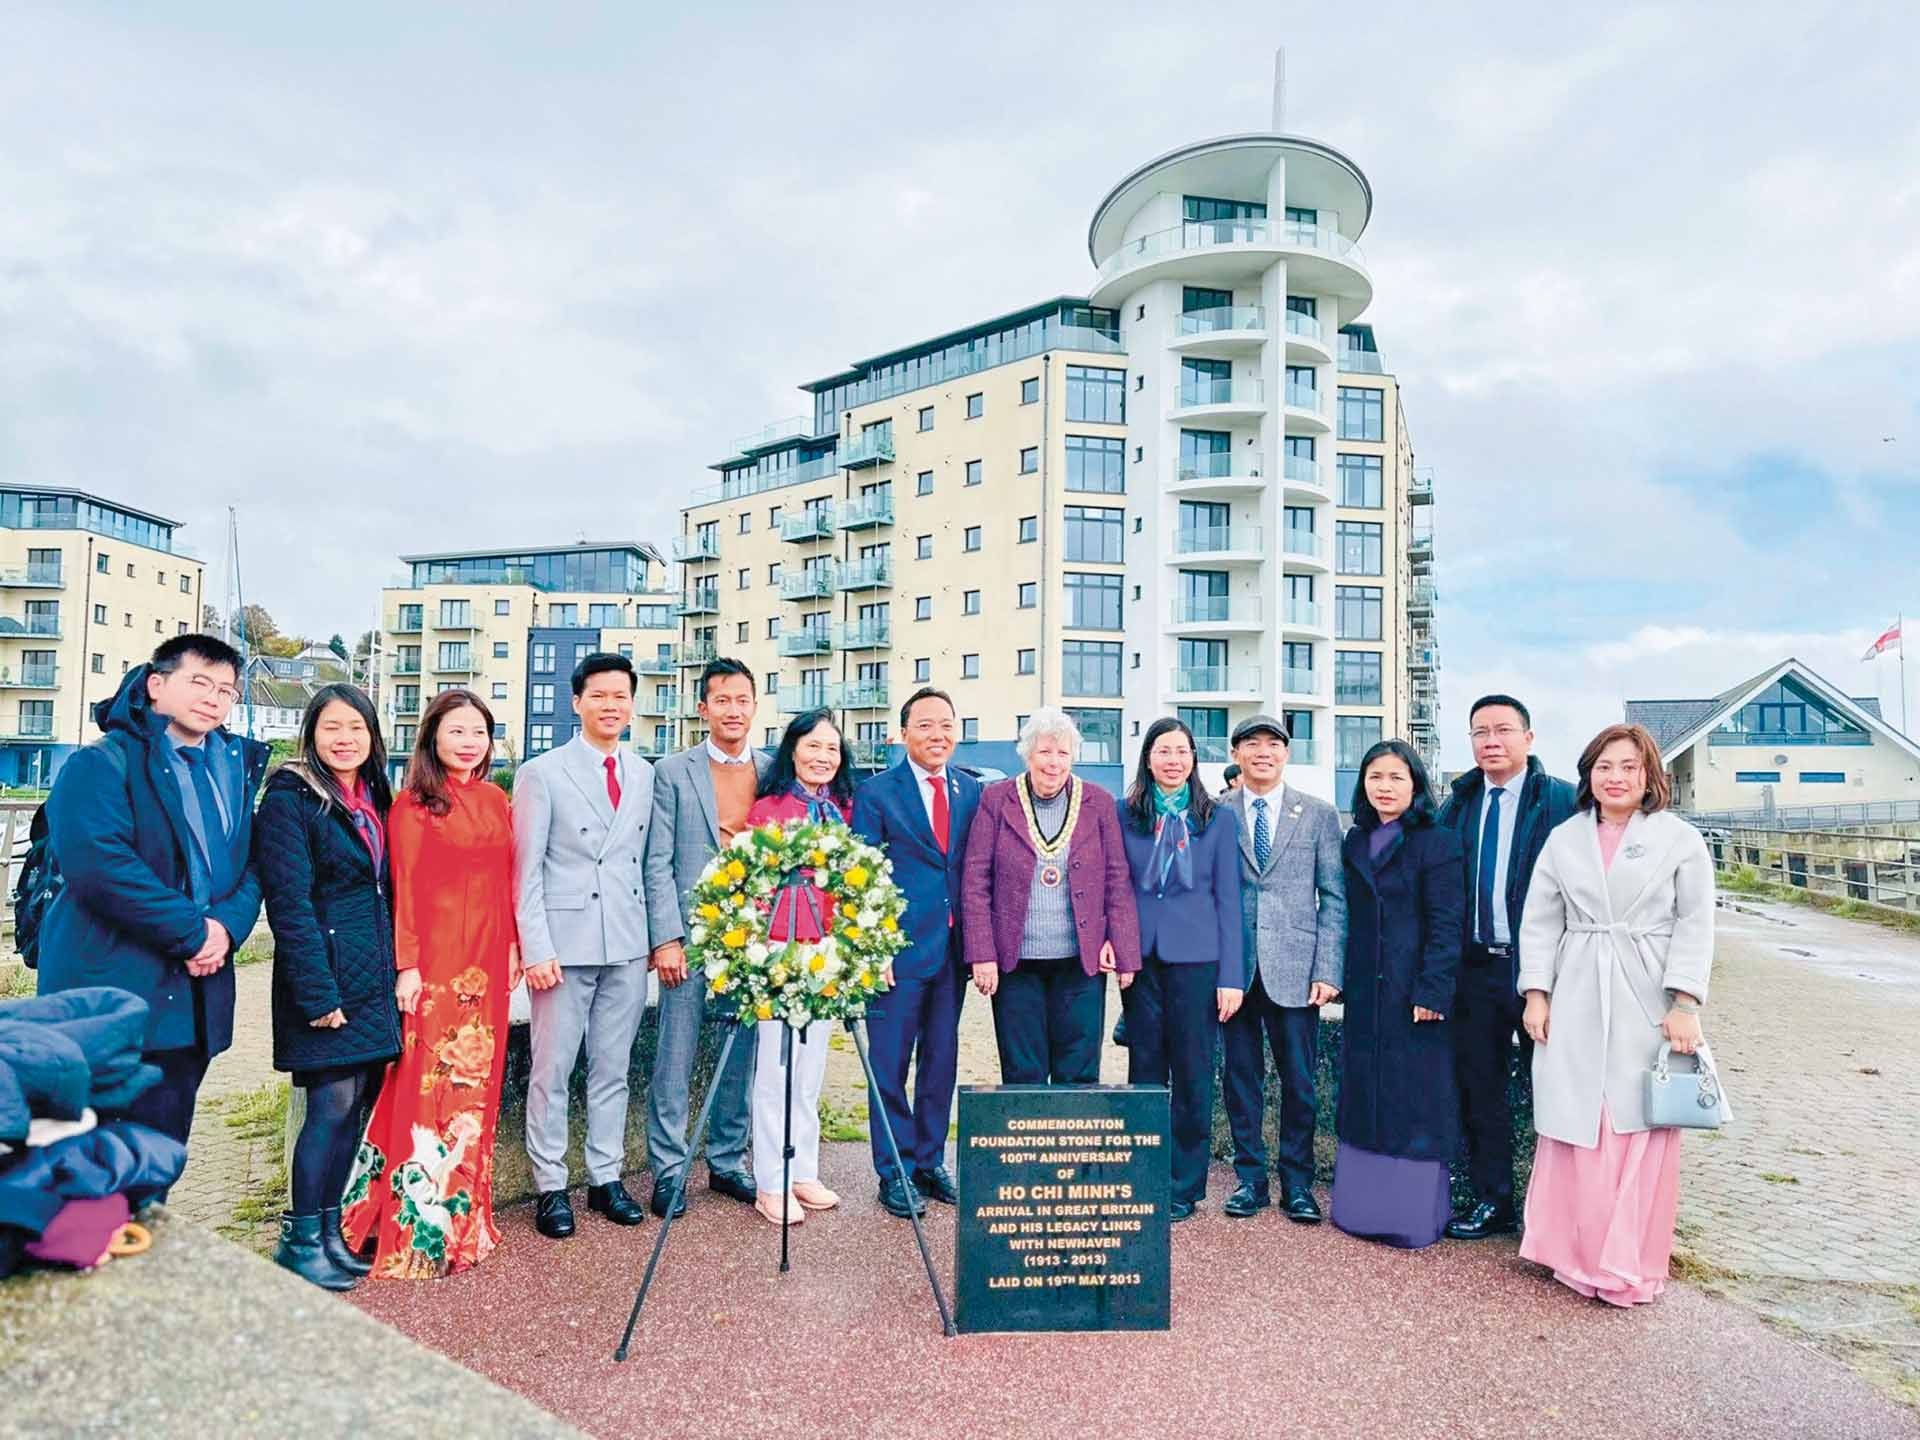 Đại sứ quán Việt Nam tại Anh thăm khu di tích Newhaven., nơi người thanh niên Nguyễn Tất Thành đã đặt chân tới trong khoảng thời gian làm việc trên tuyến phà Newhaven-Dippe sau Chiến tranh thế giới thứ nhất.